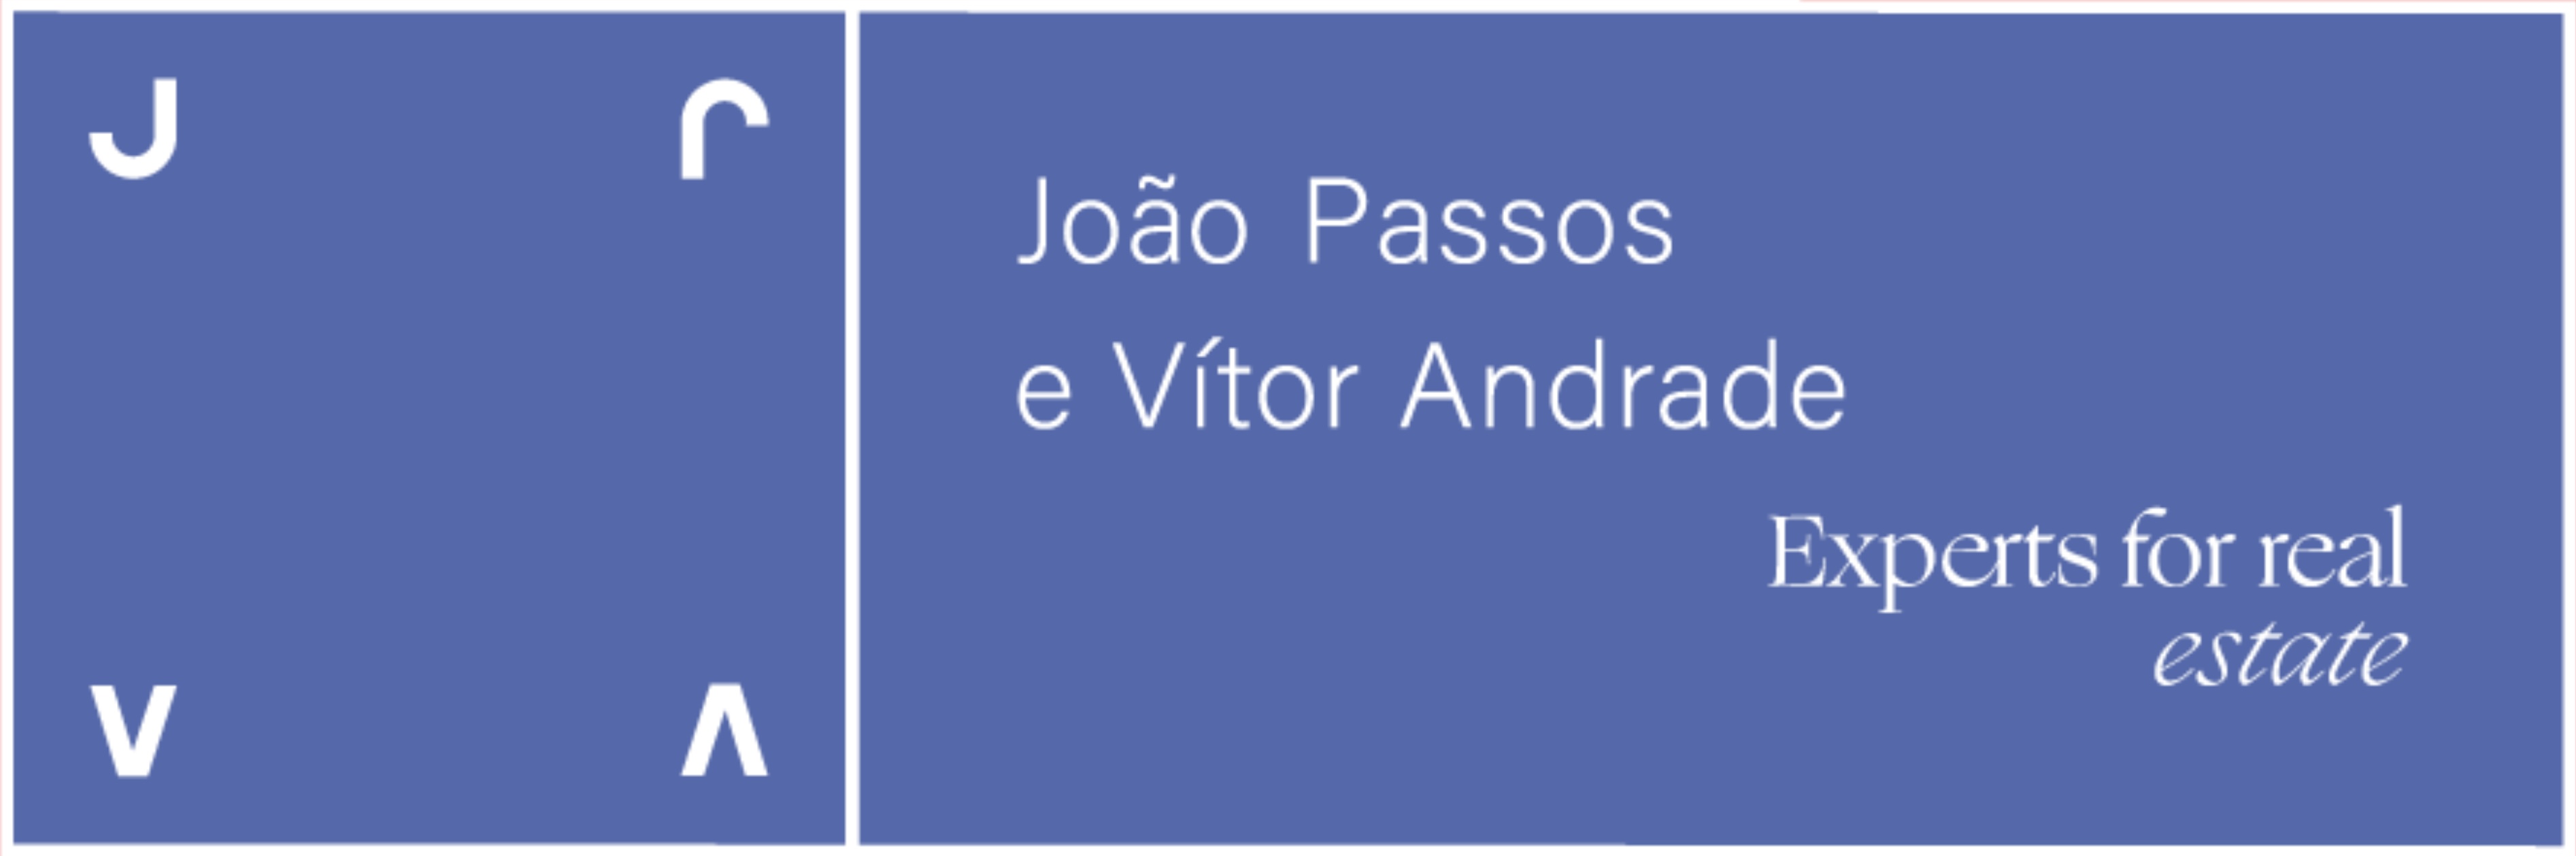 João Passos e Vítor Andrade - Guia Imobiliário